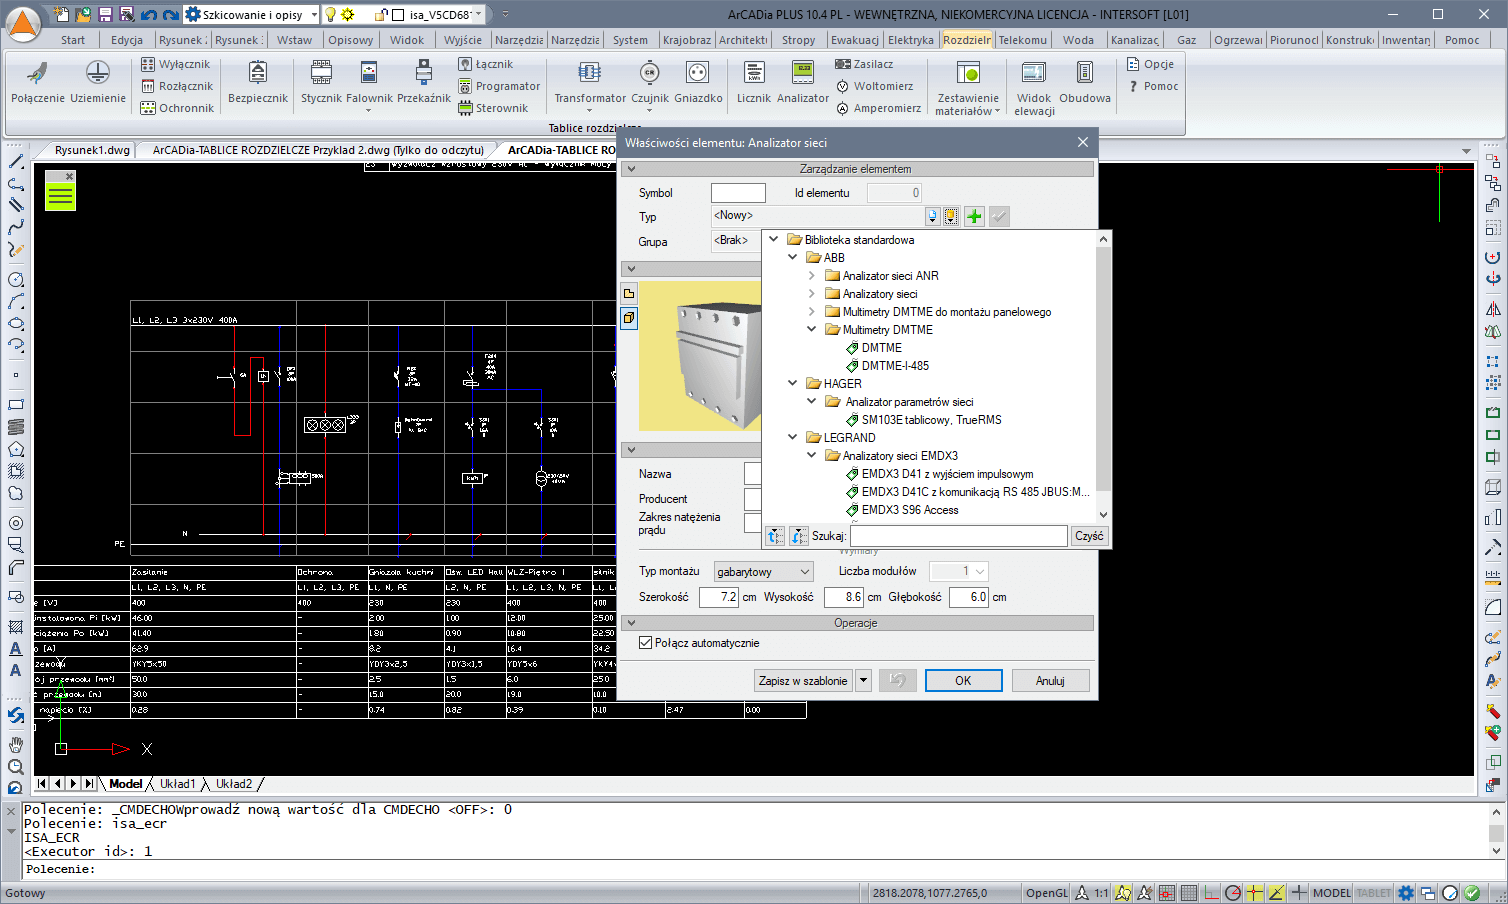 ArCADia-TABLICE ROZDZIELCZE 2 | INTERsoft program CAD